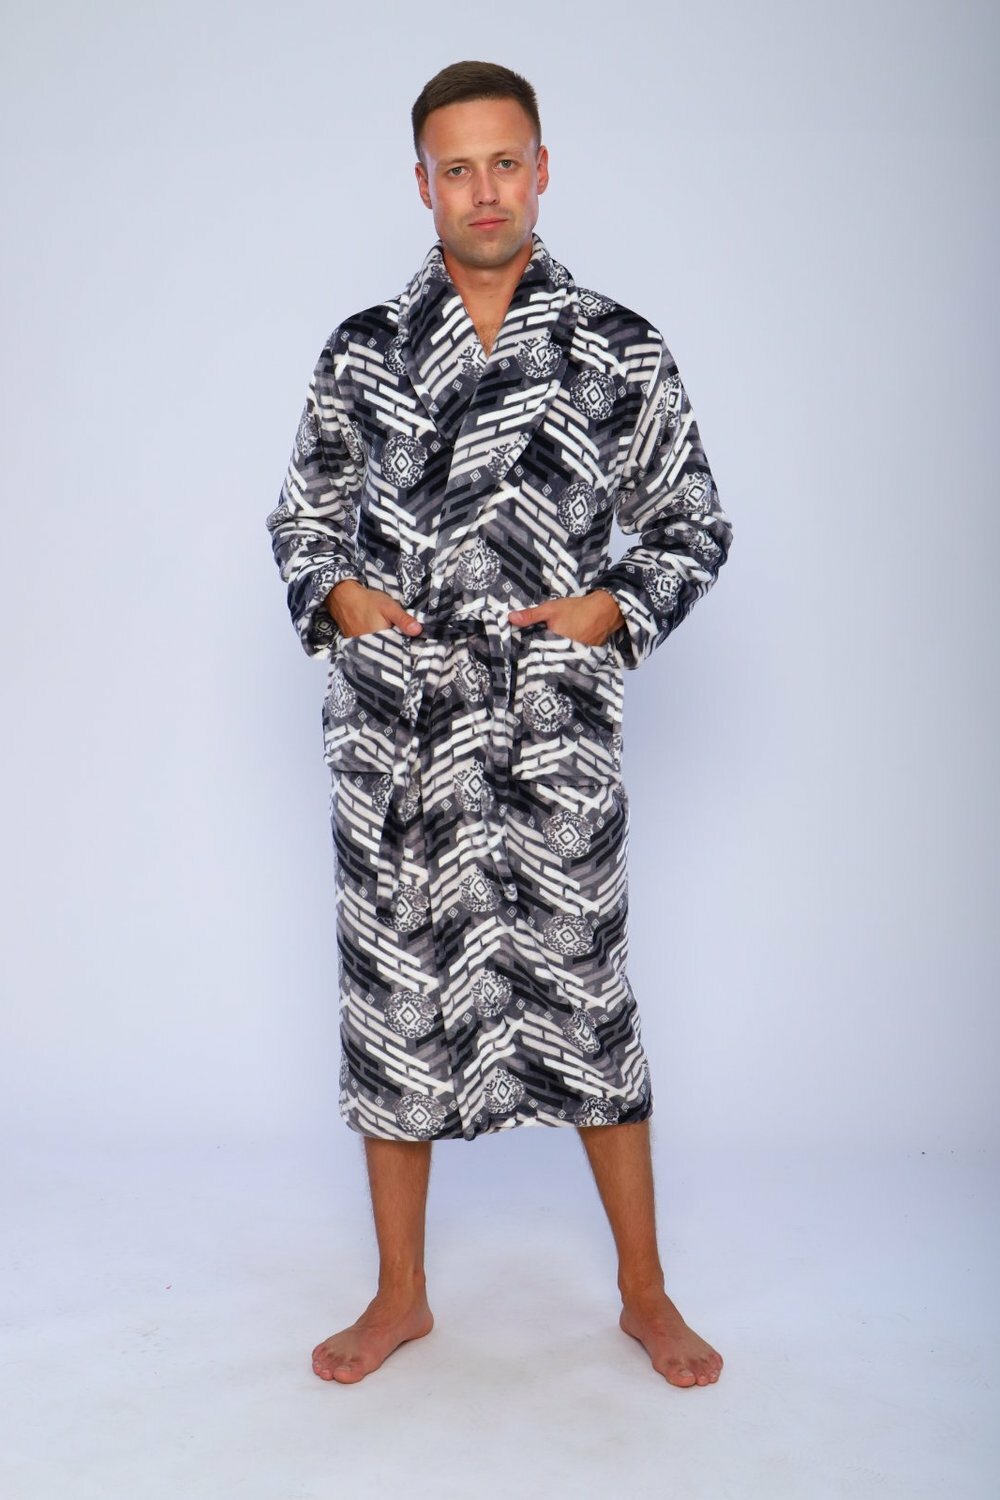 Мужской халат, теплый, цвета серый, размер 54 - фотография № 1